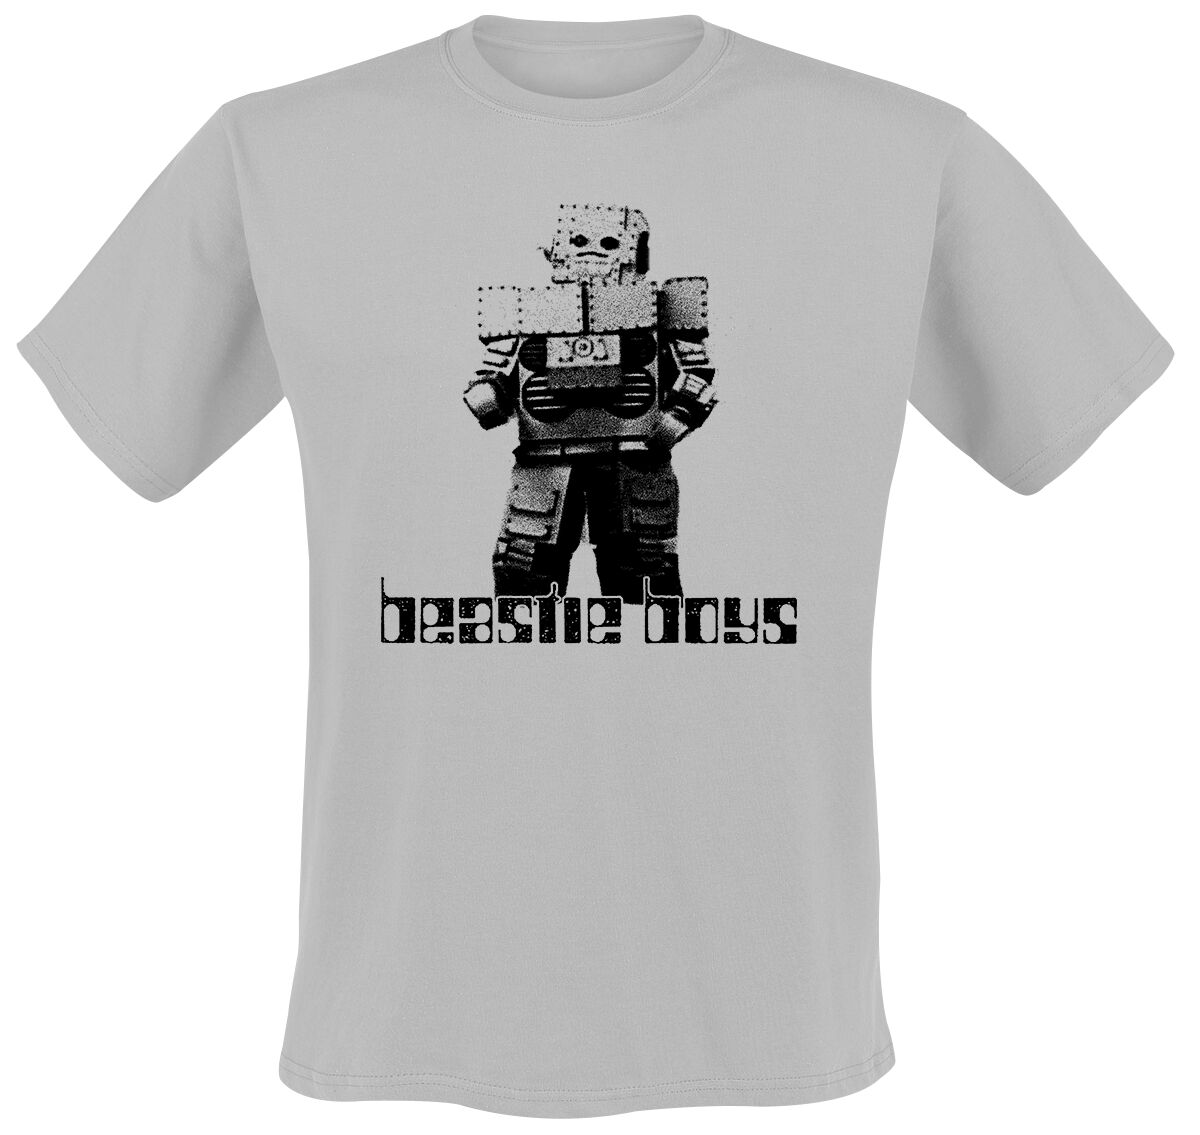 Beastie Boys T-Shirt - Intergalactic Robot - S - für Männer - Größe S - grau  - Lizenziertes Merchandise!